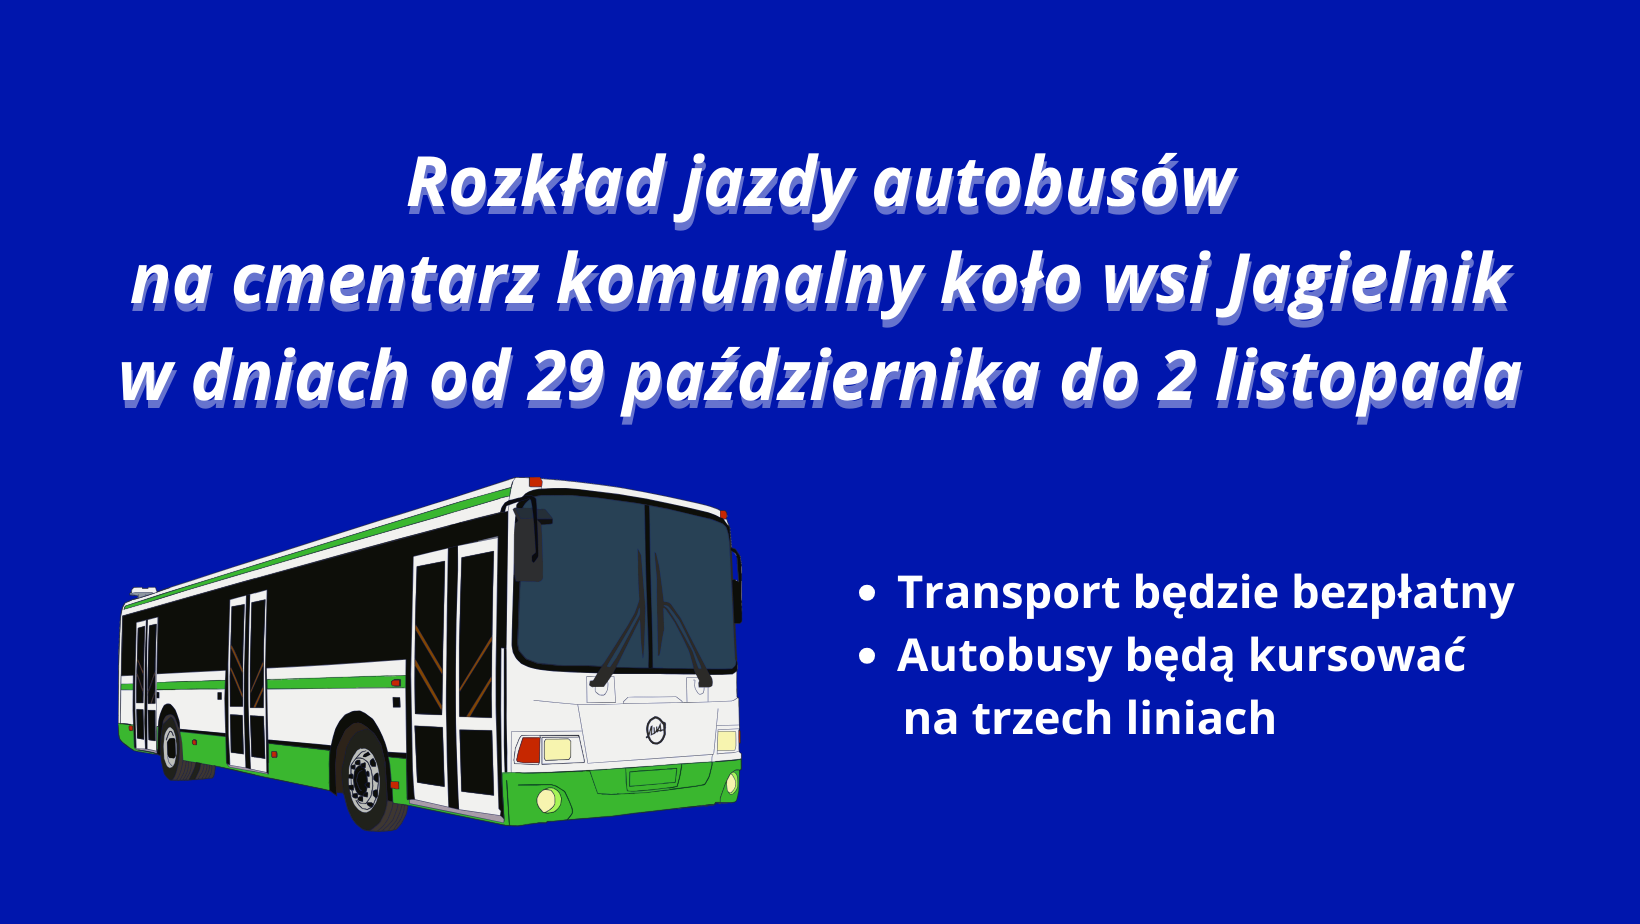 Ilustracja do informacji: Rozkład jazdy autobusów na cmentarz komunalny na Wszystkich Świętych